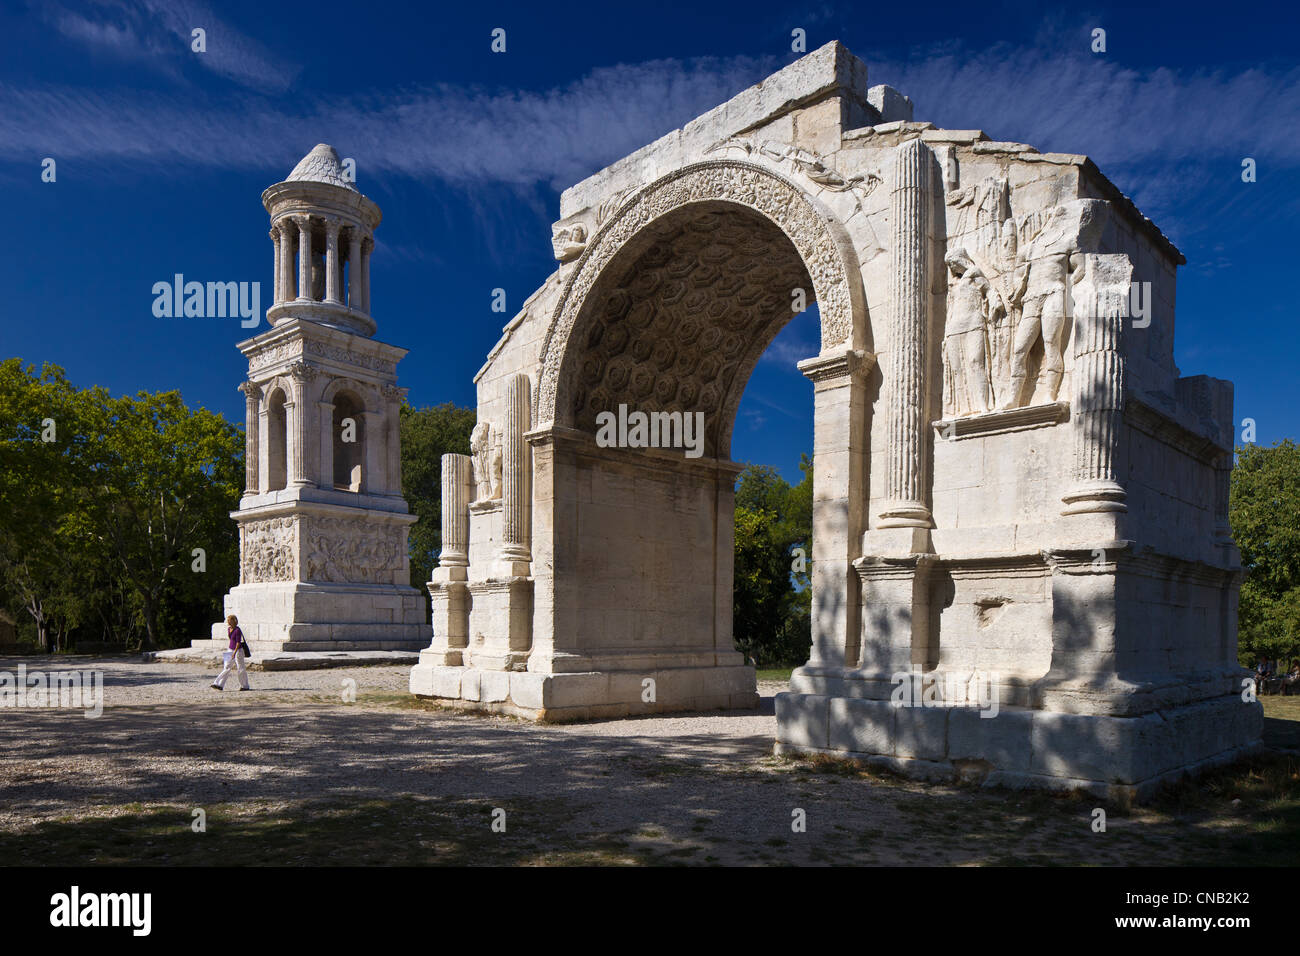 France, Bouches du Rhone, Alpilles, Saint Remy de Provence, Gallo Roman Antiquity site of Glanum, triumphal arch and Mausolee Stock Photo